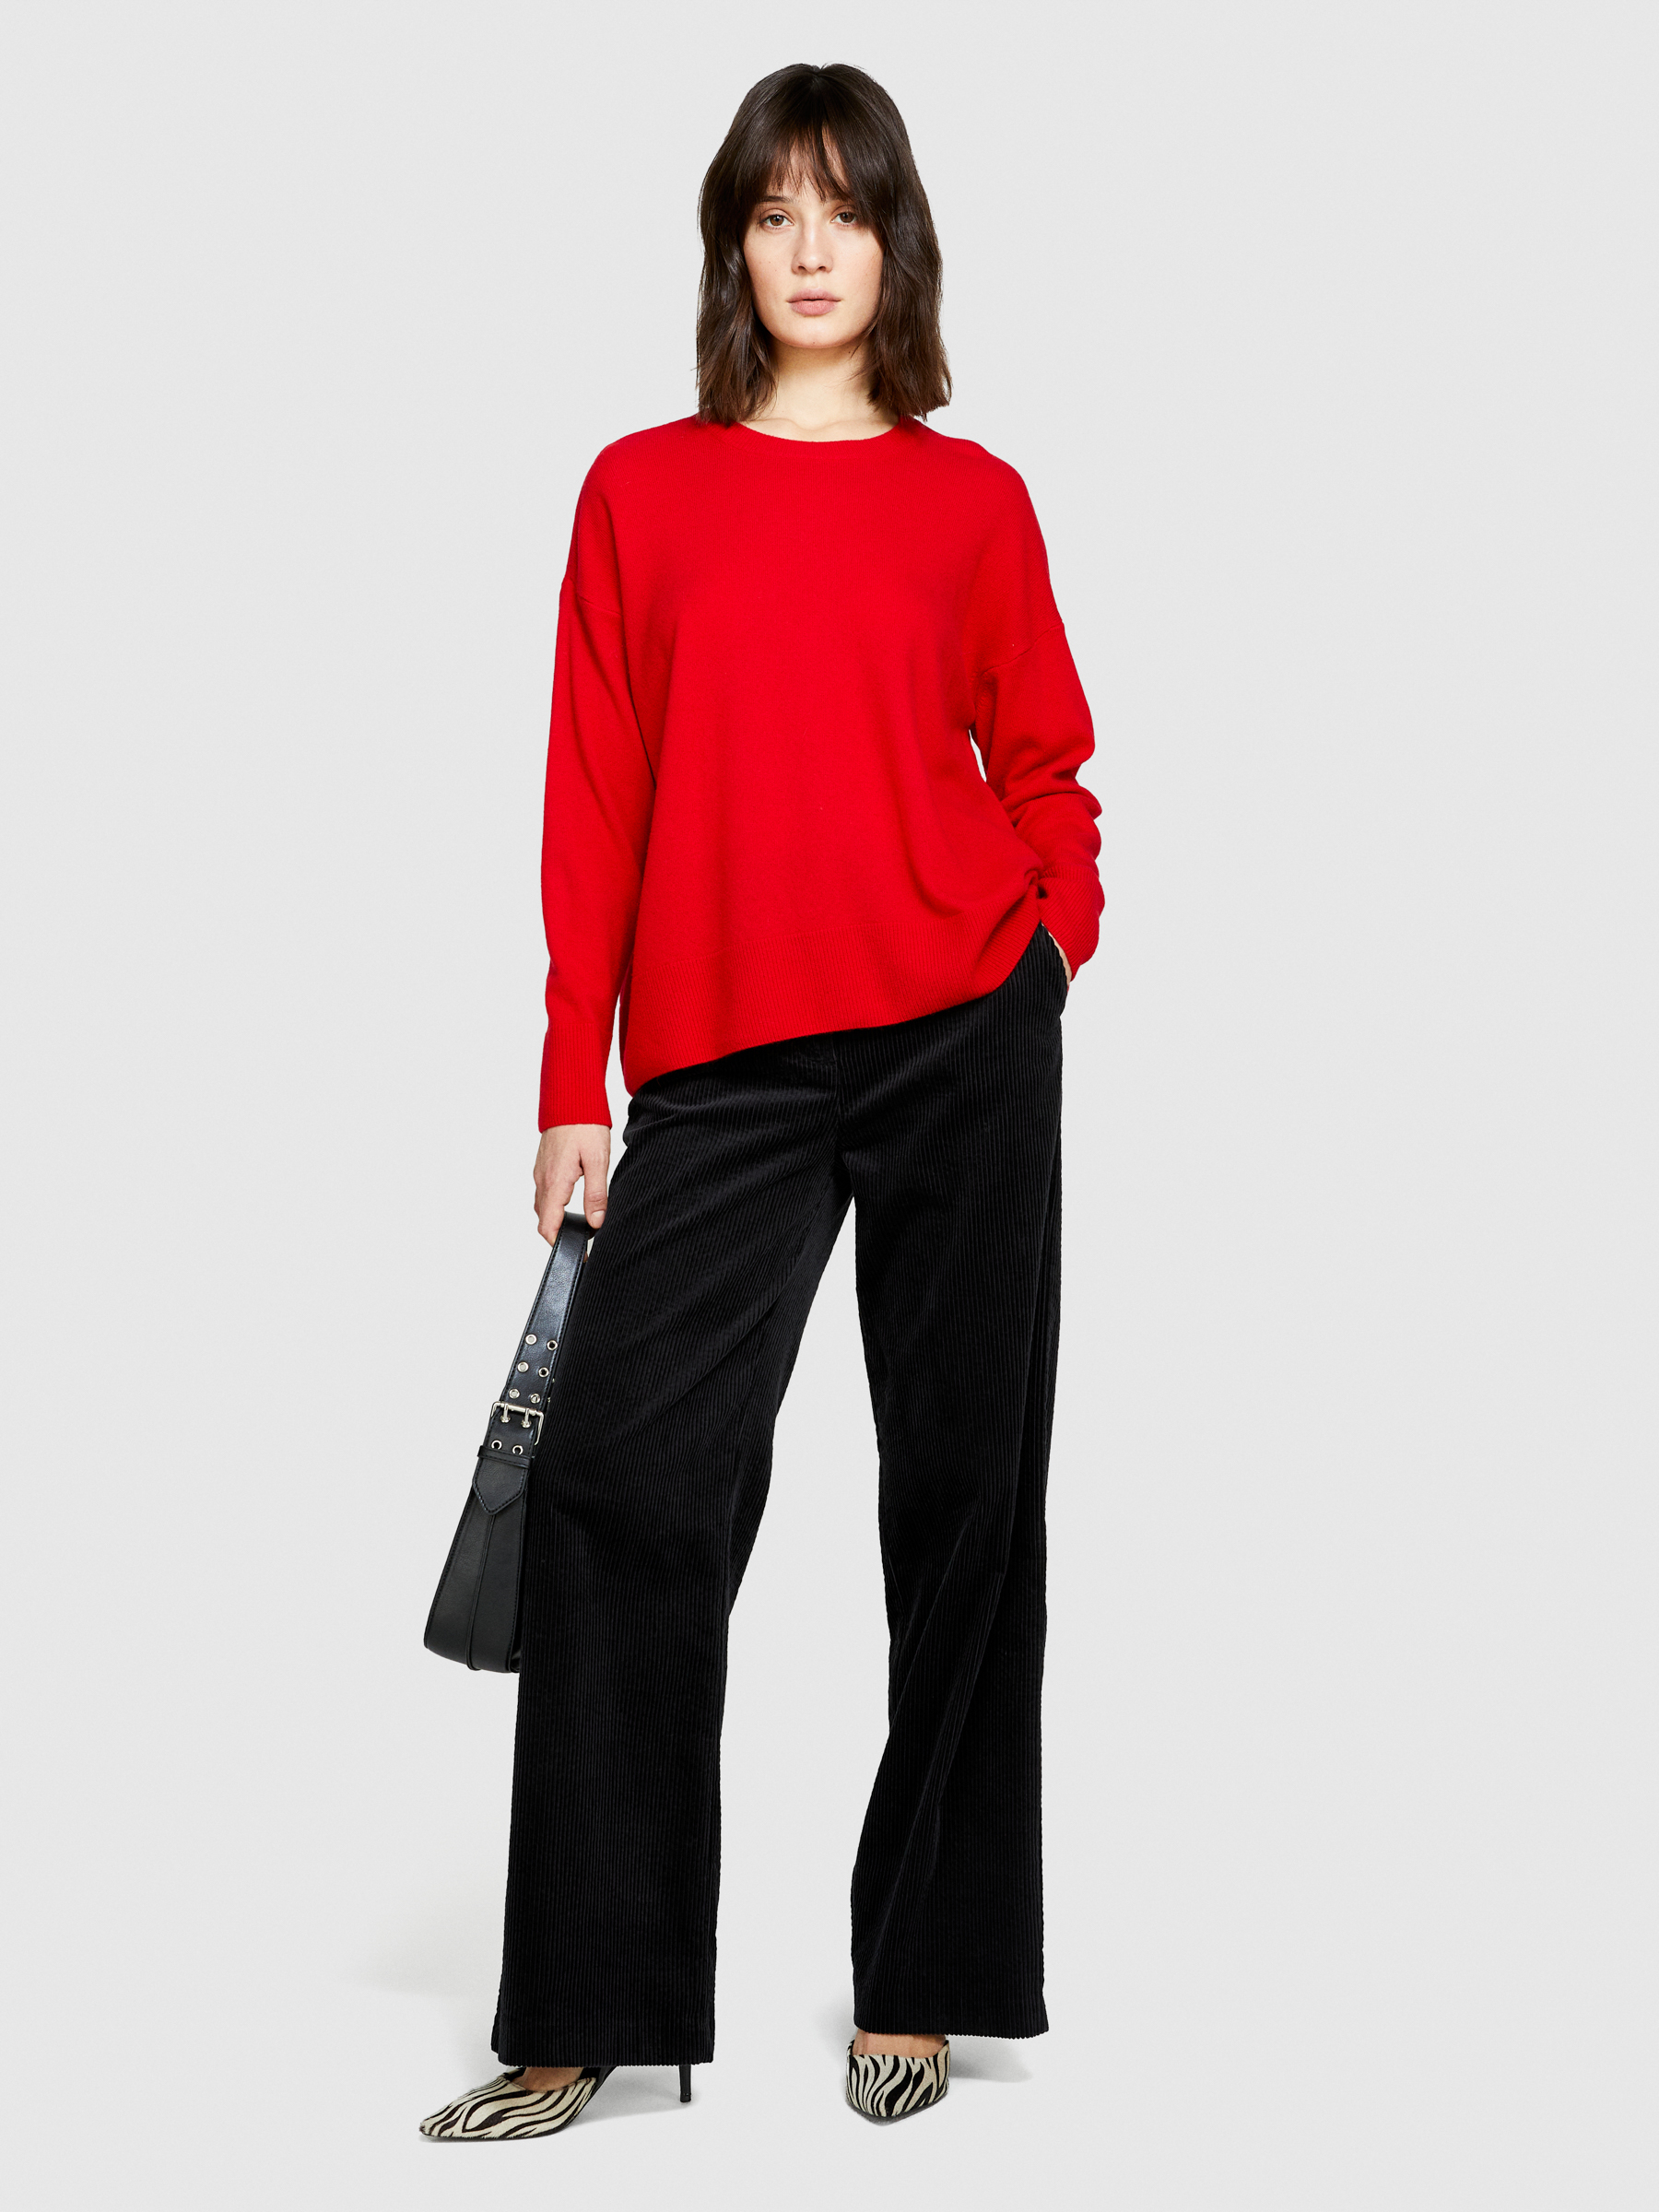 Sisley - Boxy Fit Sweater, Woman, Red, Size: XS